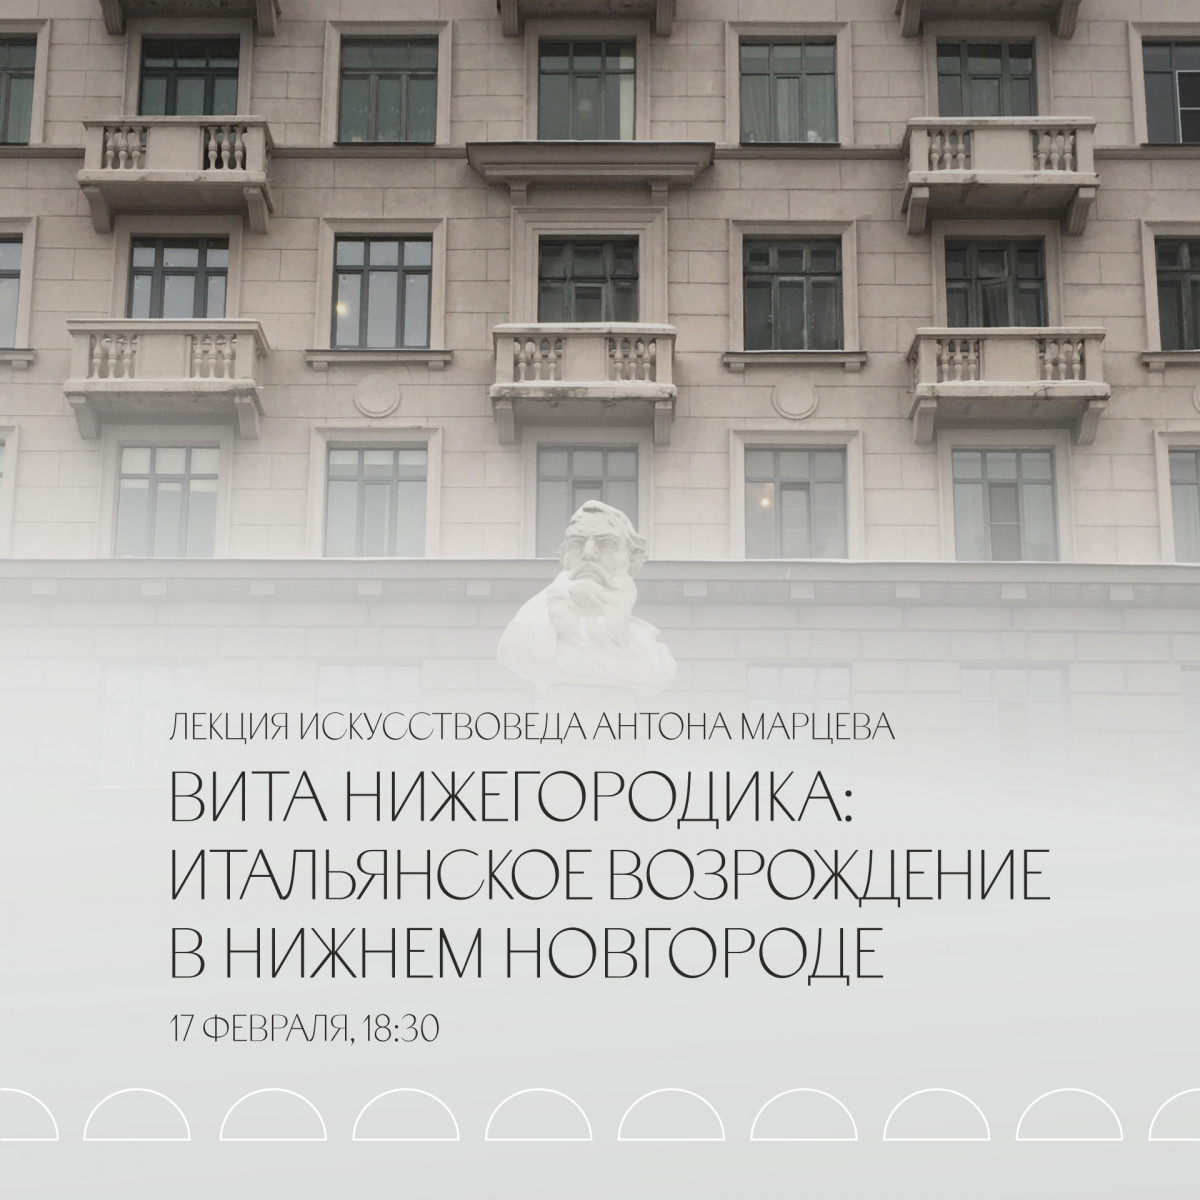 Лекция Антона Марцева о Возрождении в Нижнем Новгороде пройдет в Арсенале